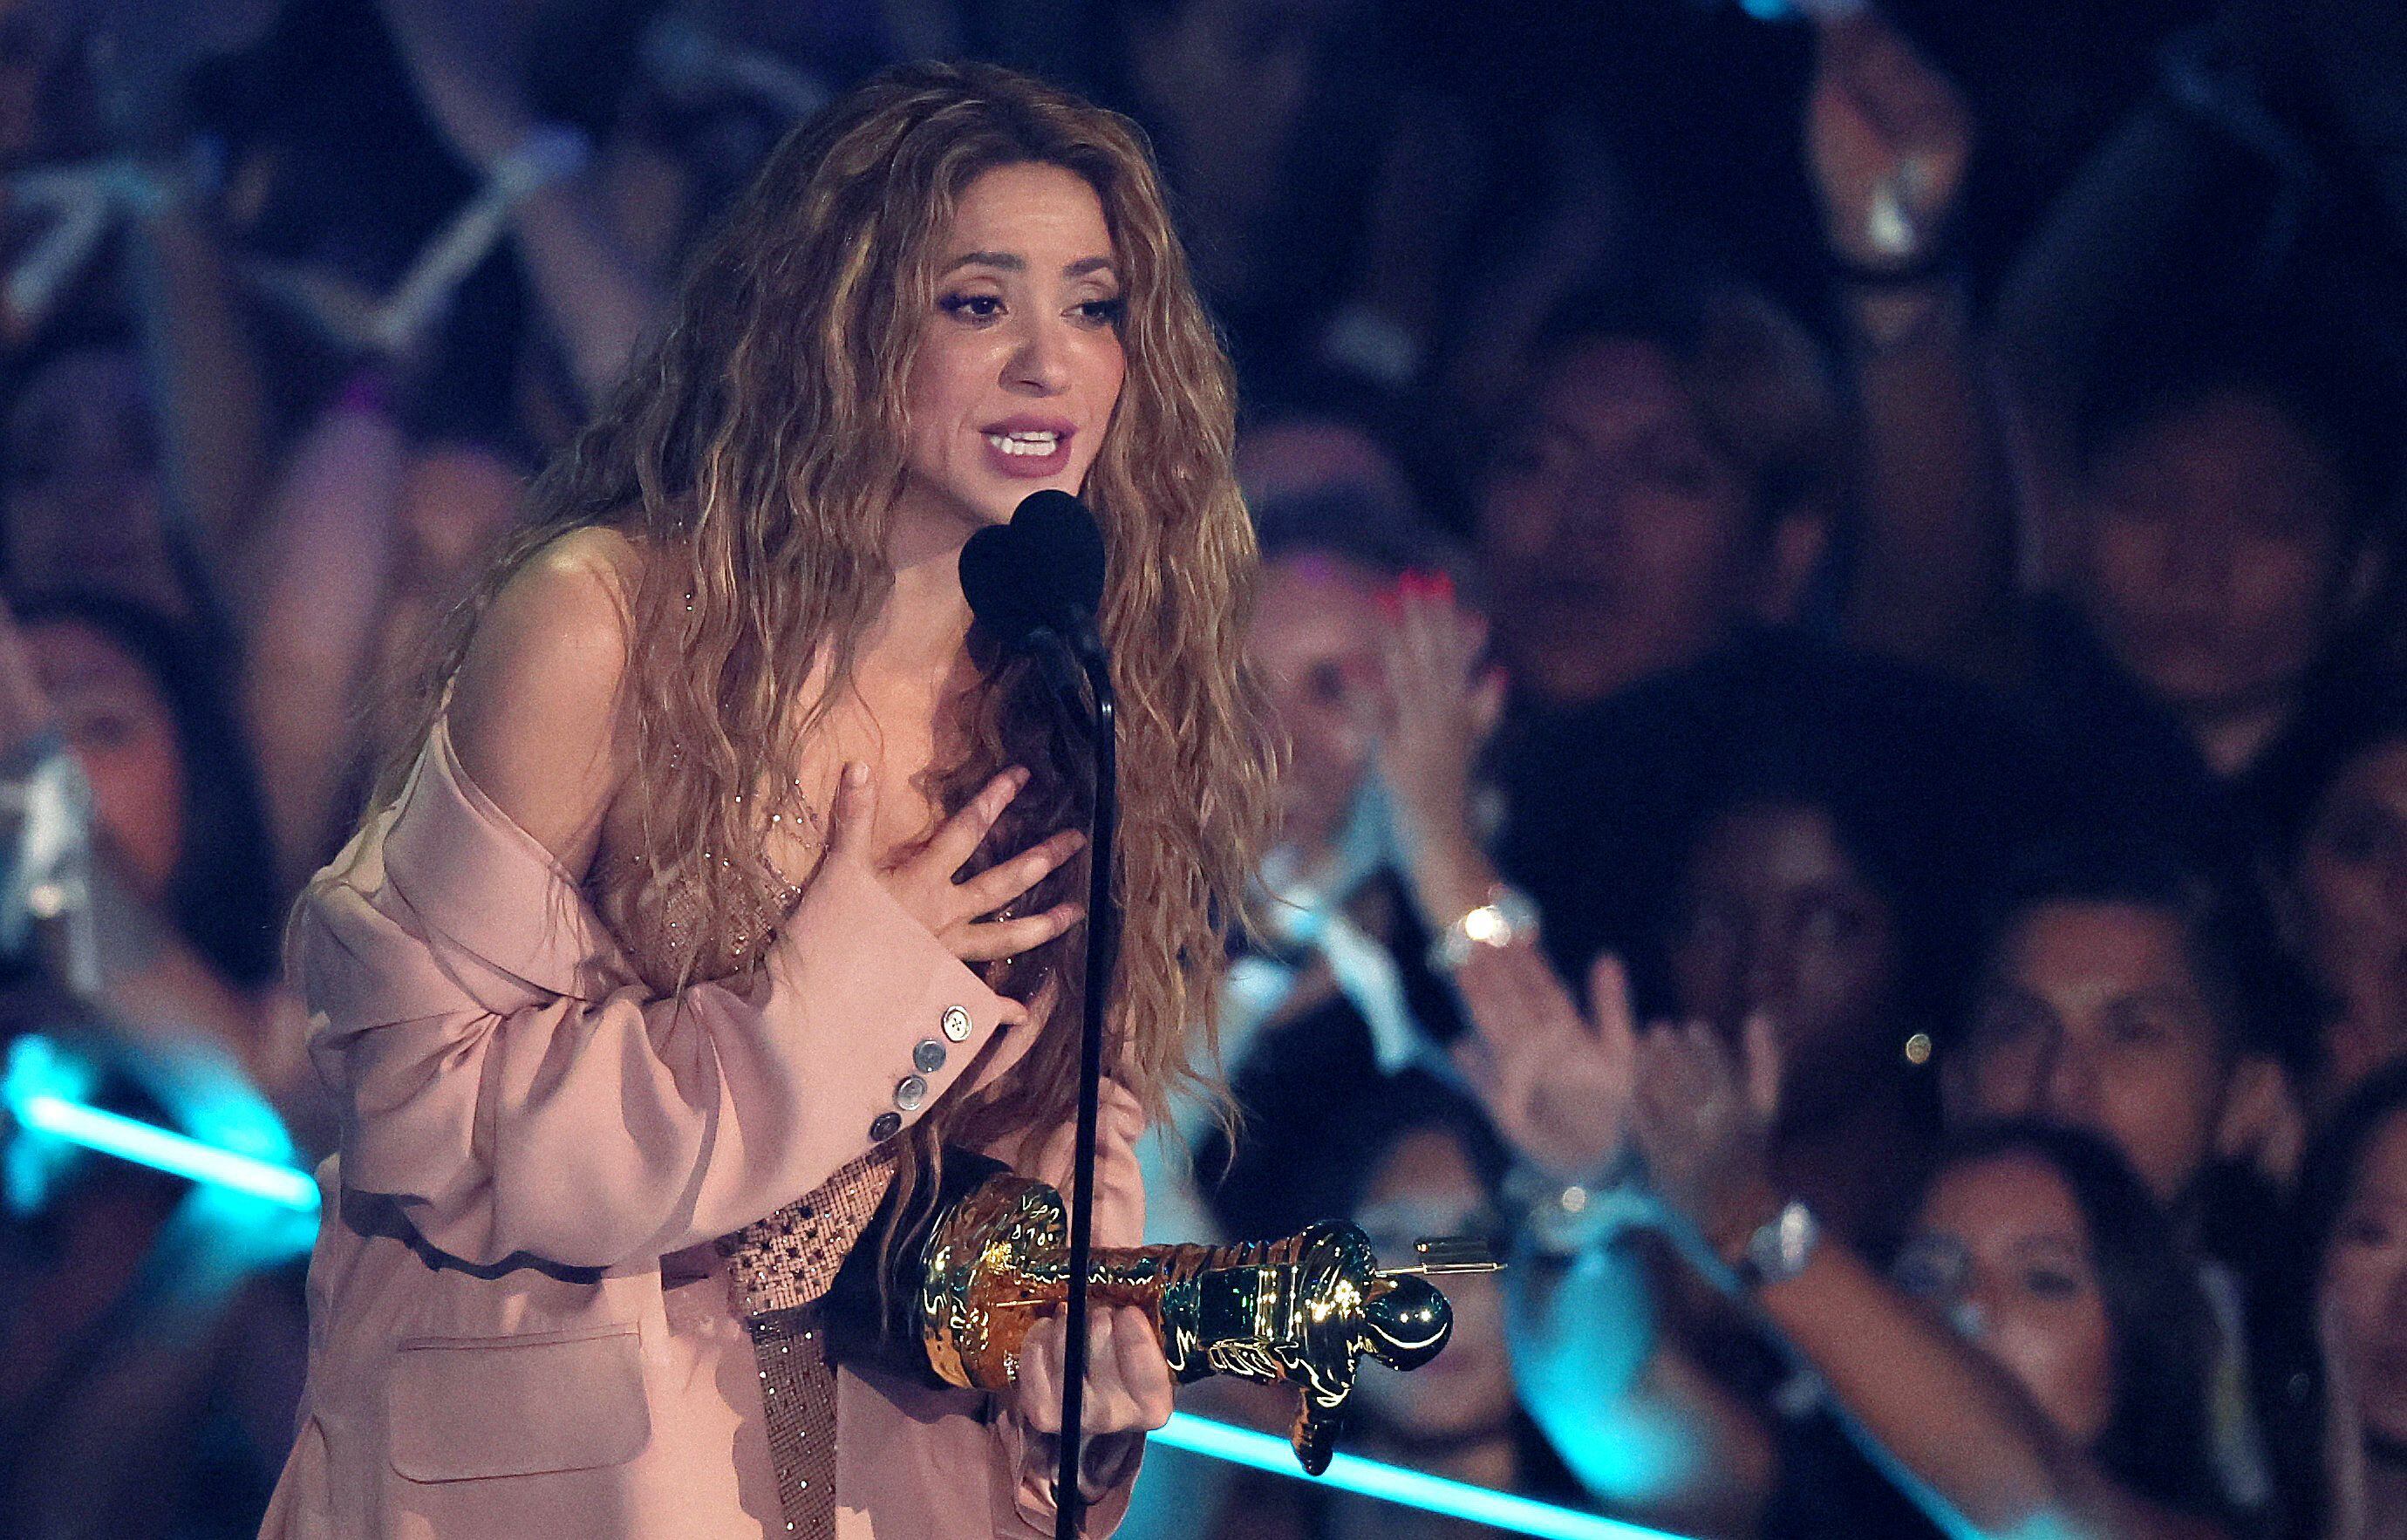 Shakira se llevó el premio más prestigioso de la noche, el “Video Vanguard”, que reconoce las innovaciones en las grabaciones audiovisuales de la industria.